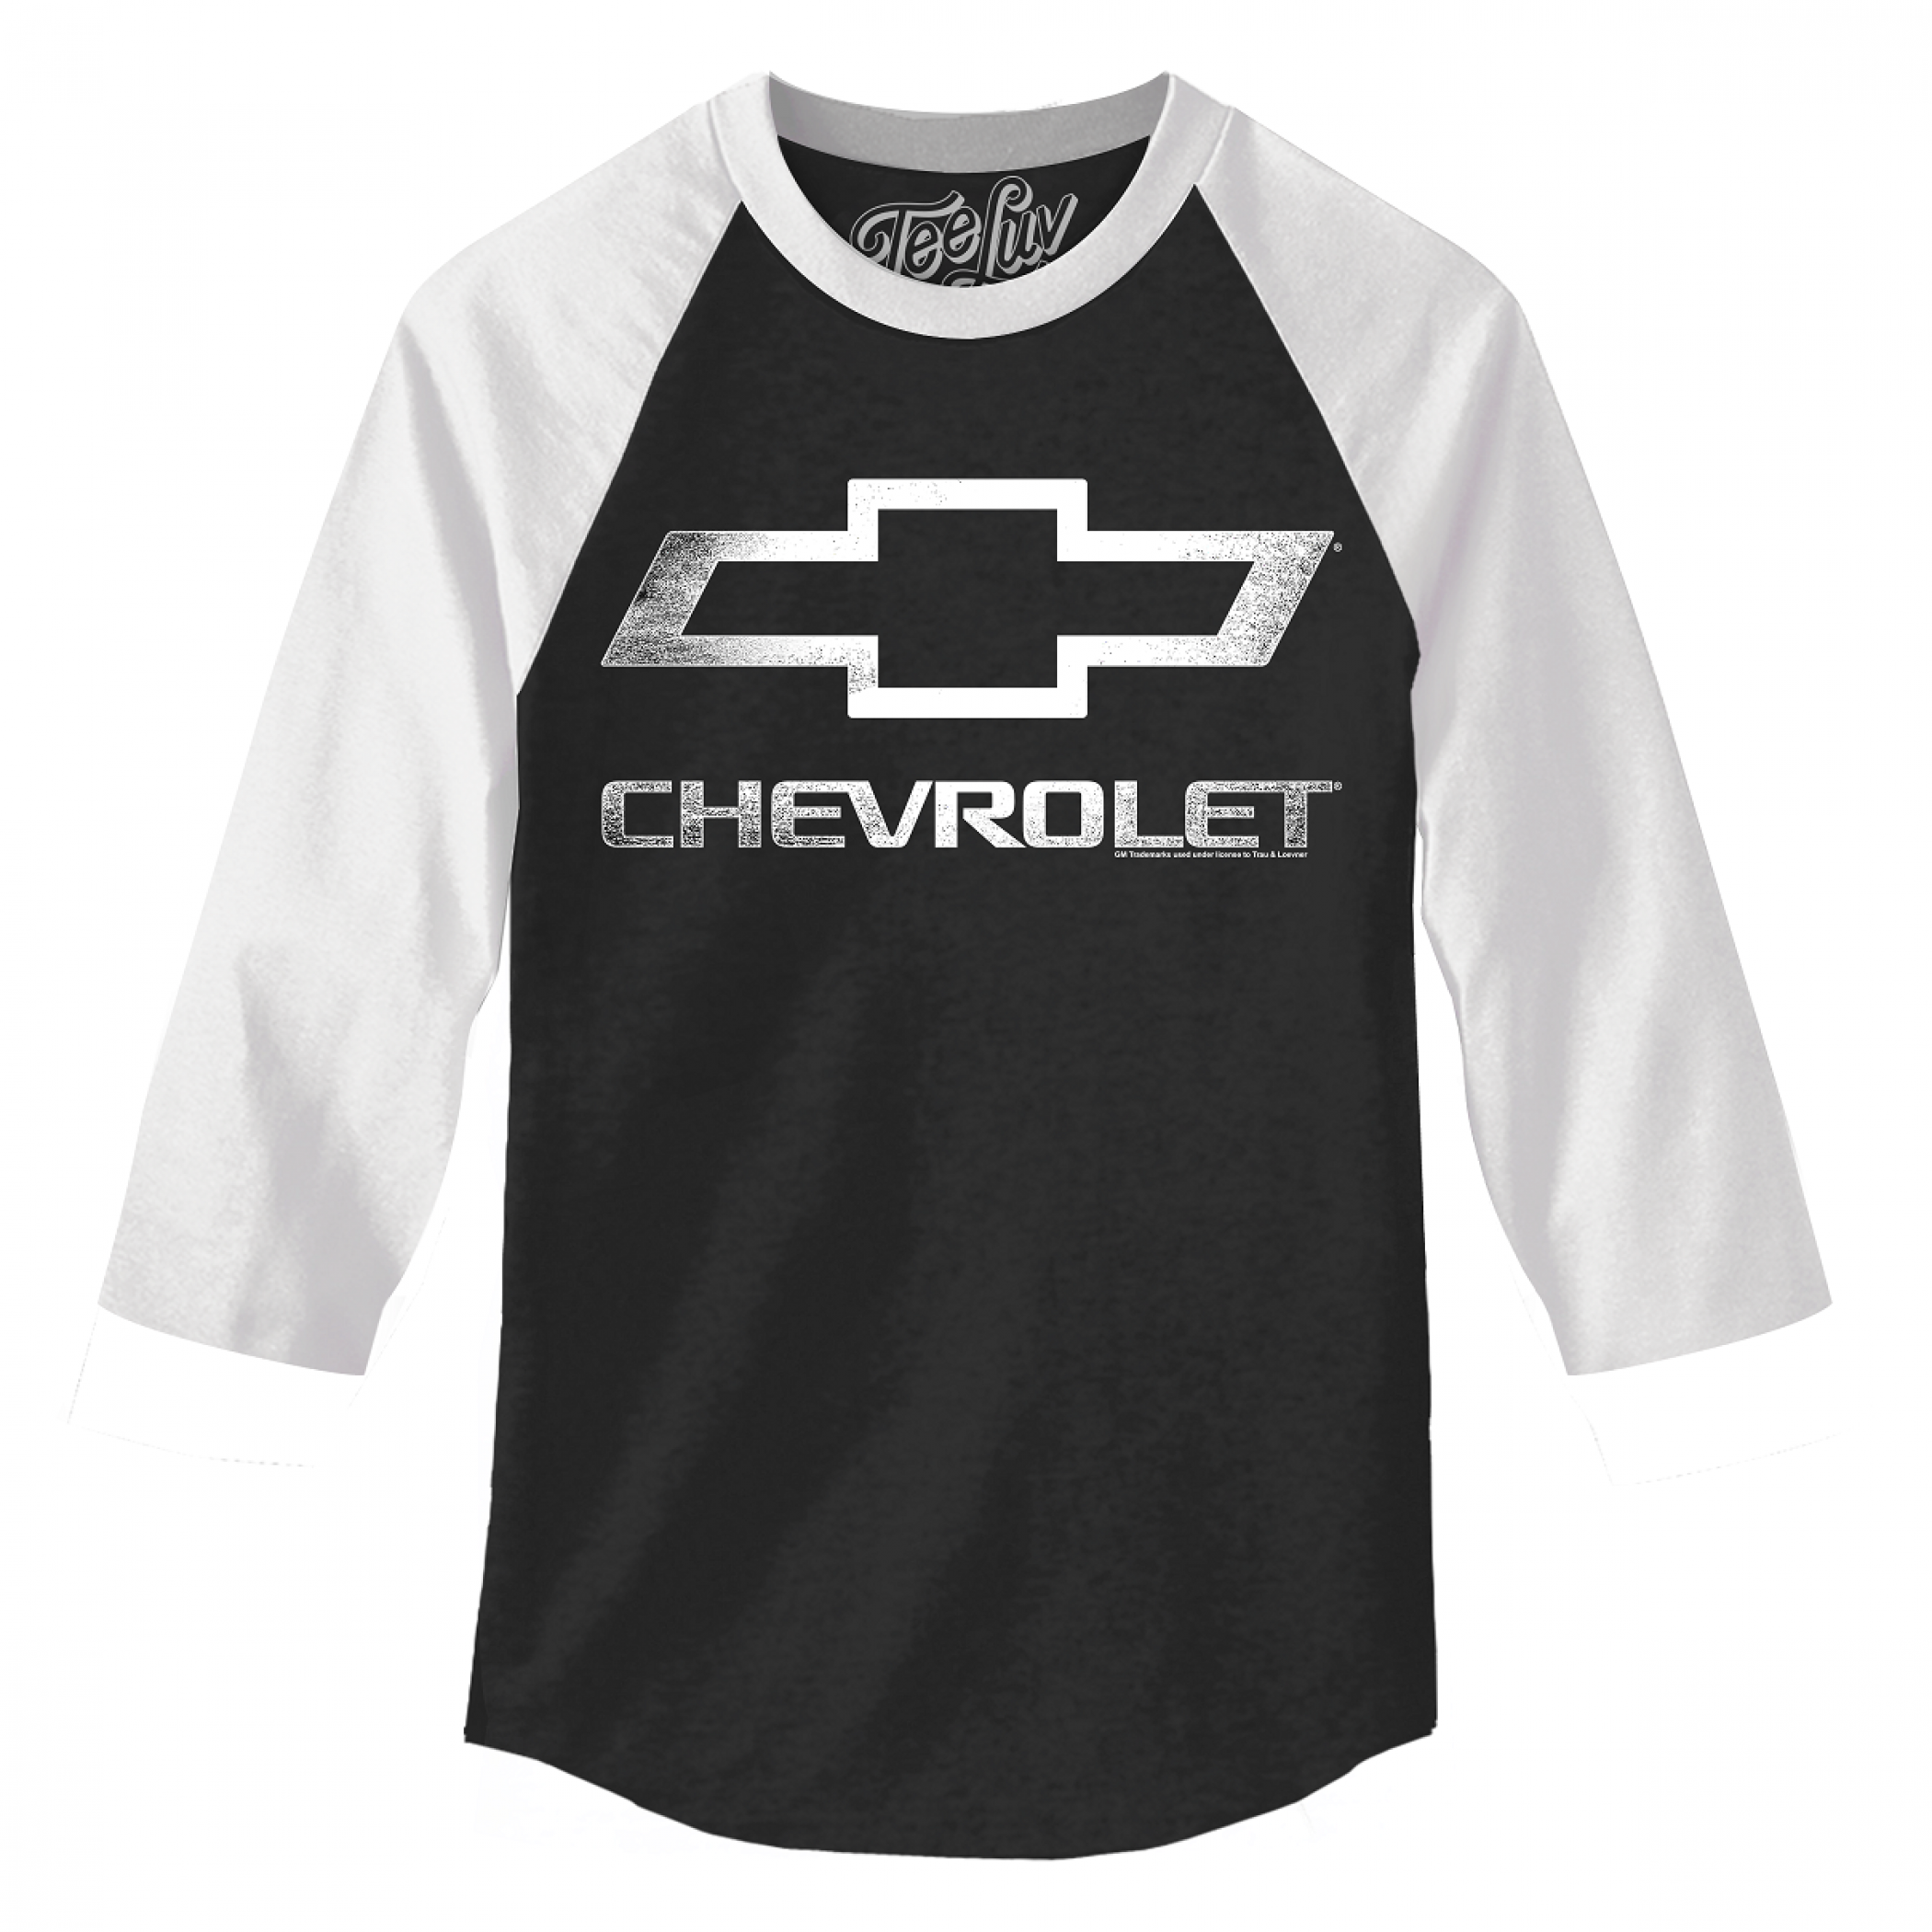 Chevrolet Black and White Baseball T-Shirt